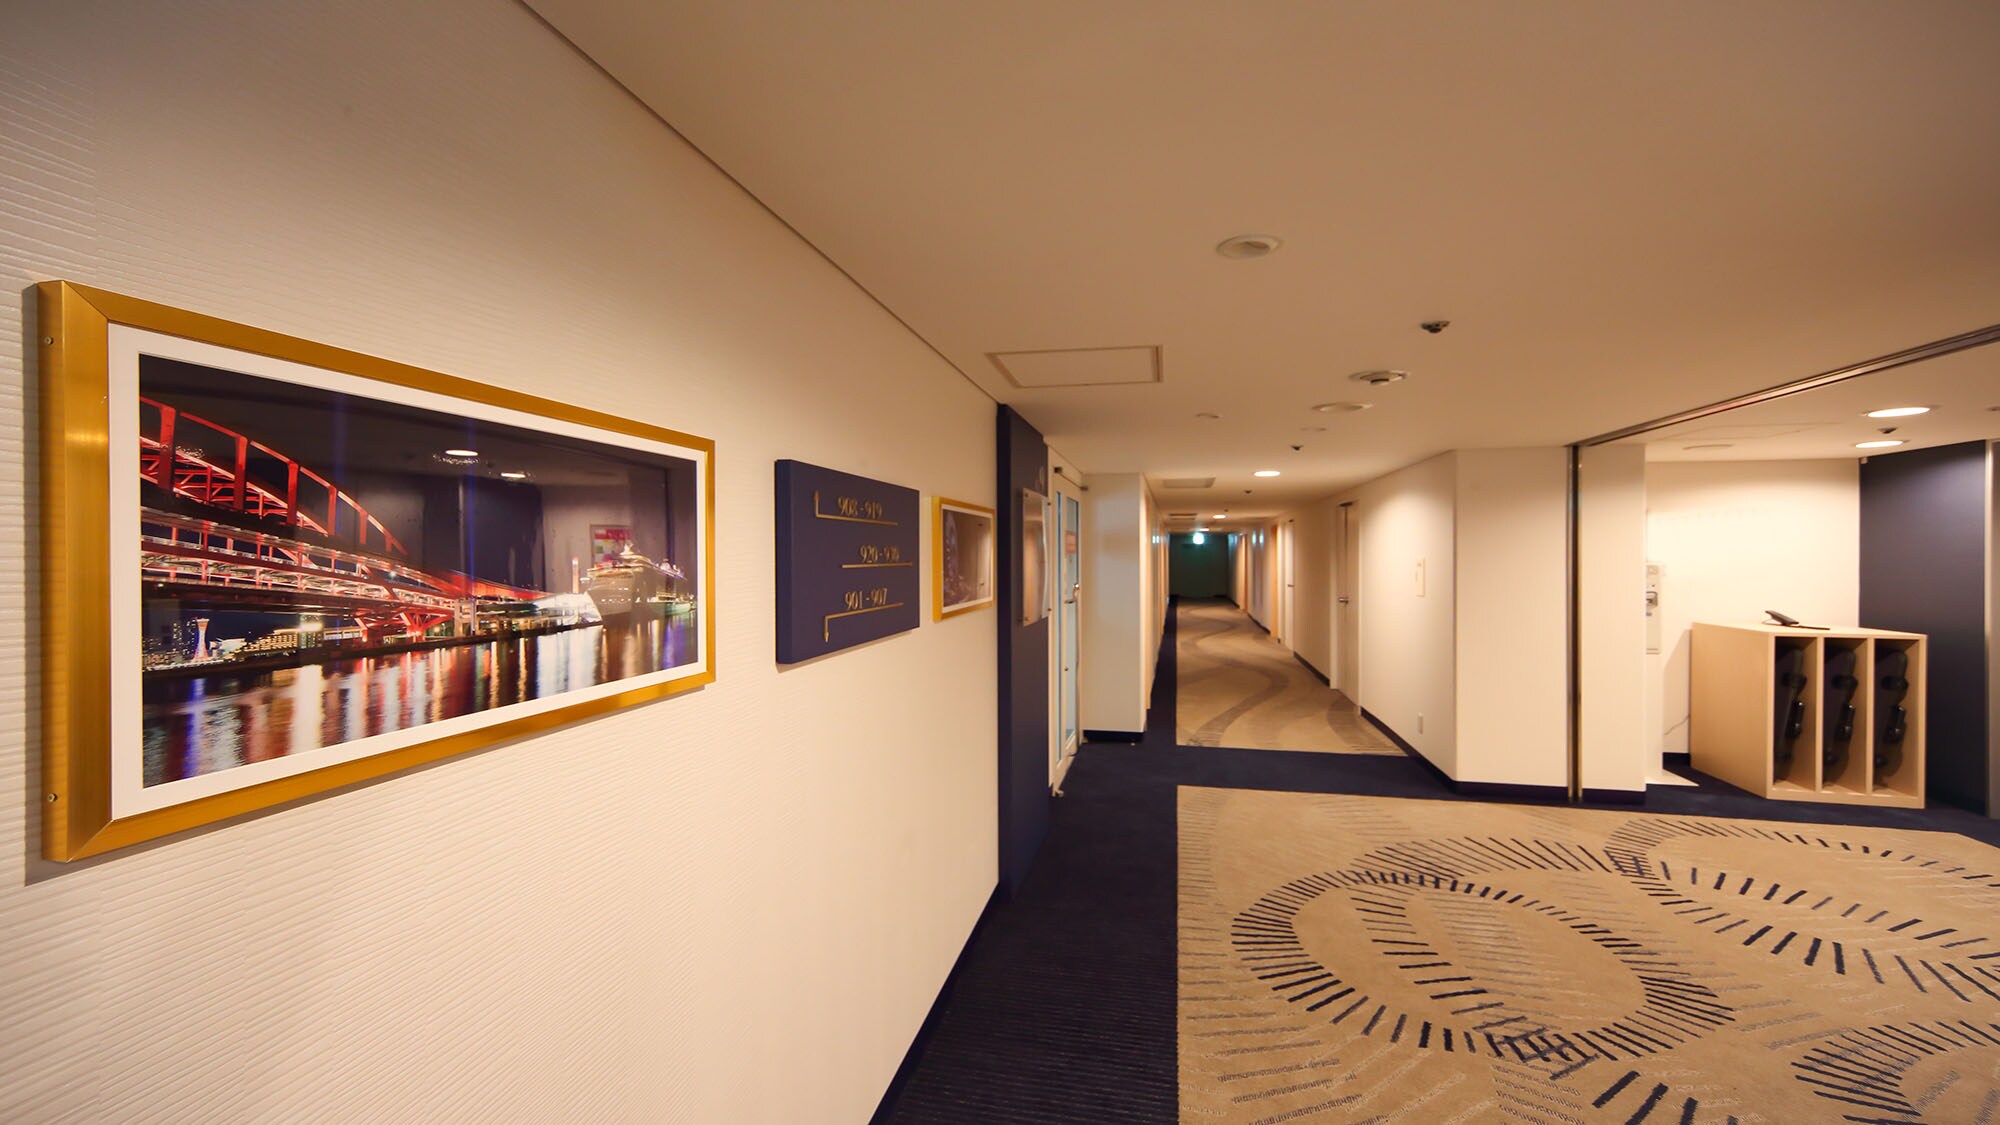  Koridor depan lift lantai standar